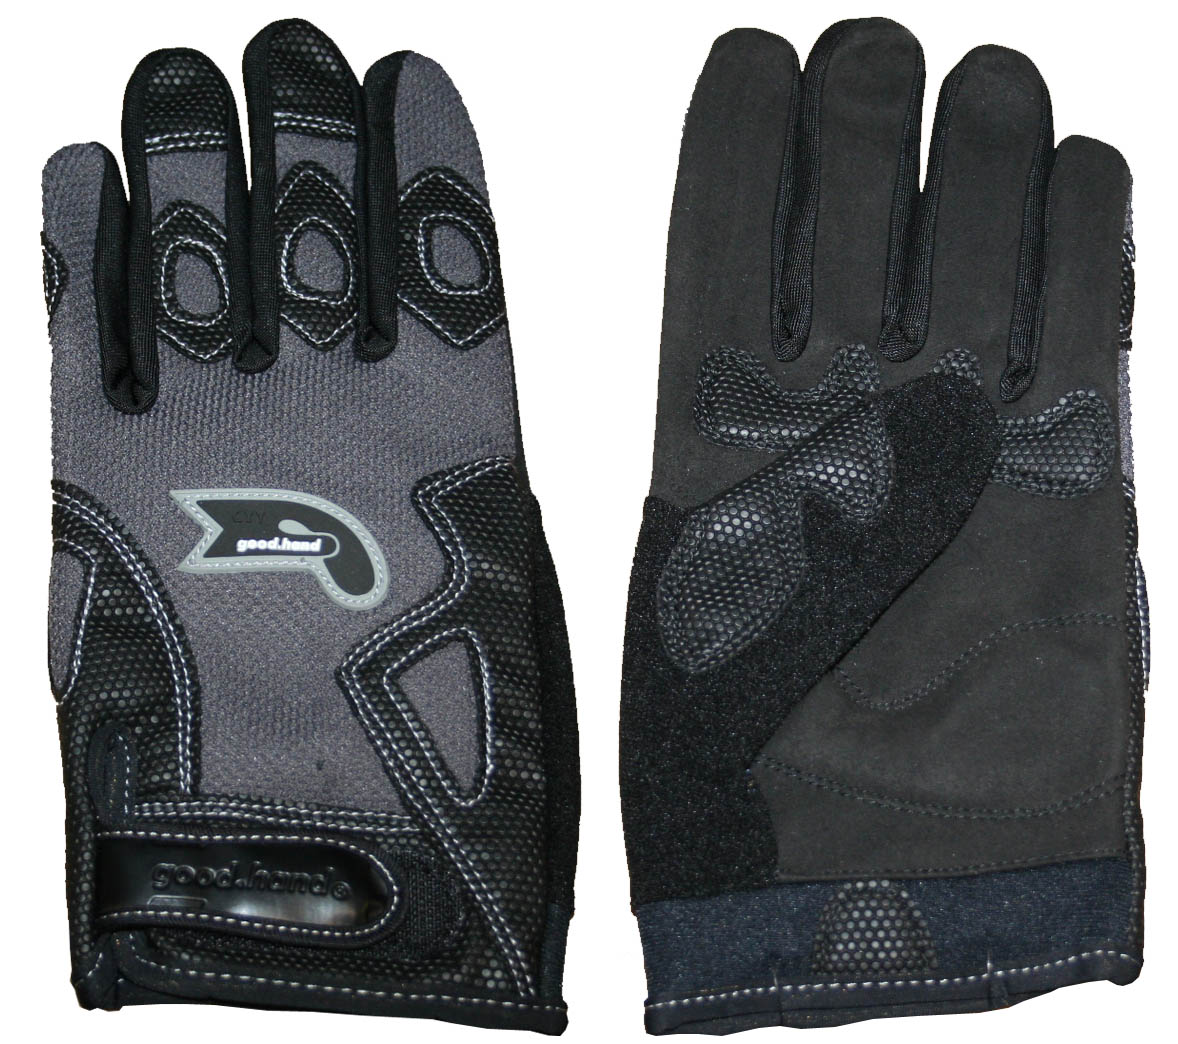 Перчатки полные, M, черно-серые: верх-эластан с защитными накладками, ладонь-микрофибра, летние.